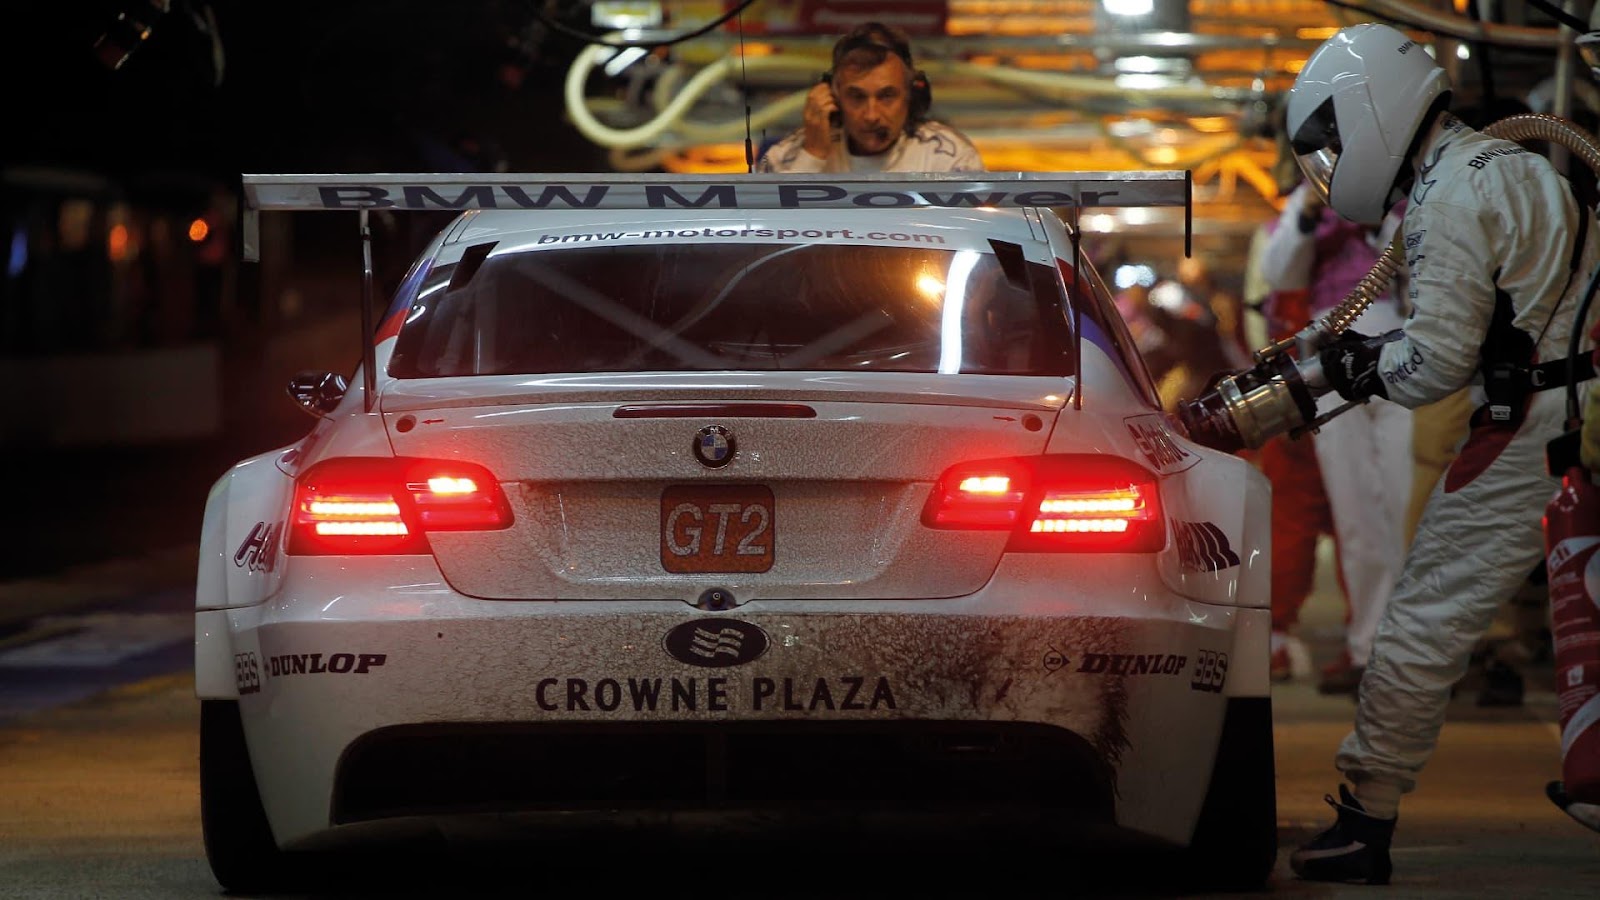 Le Mans 24-hour race pit stop